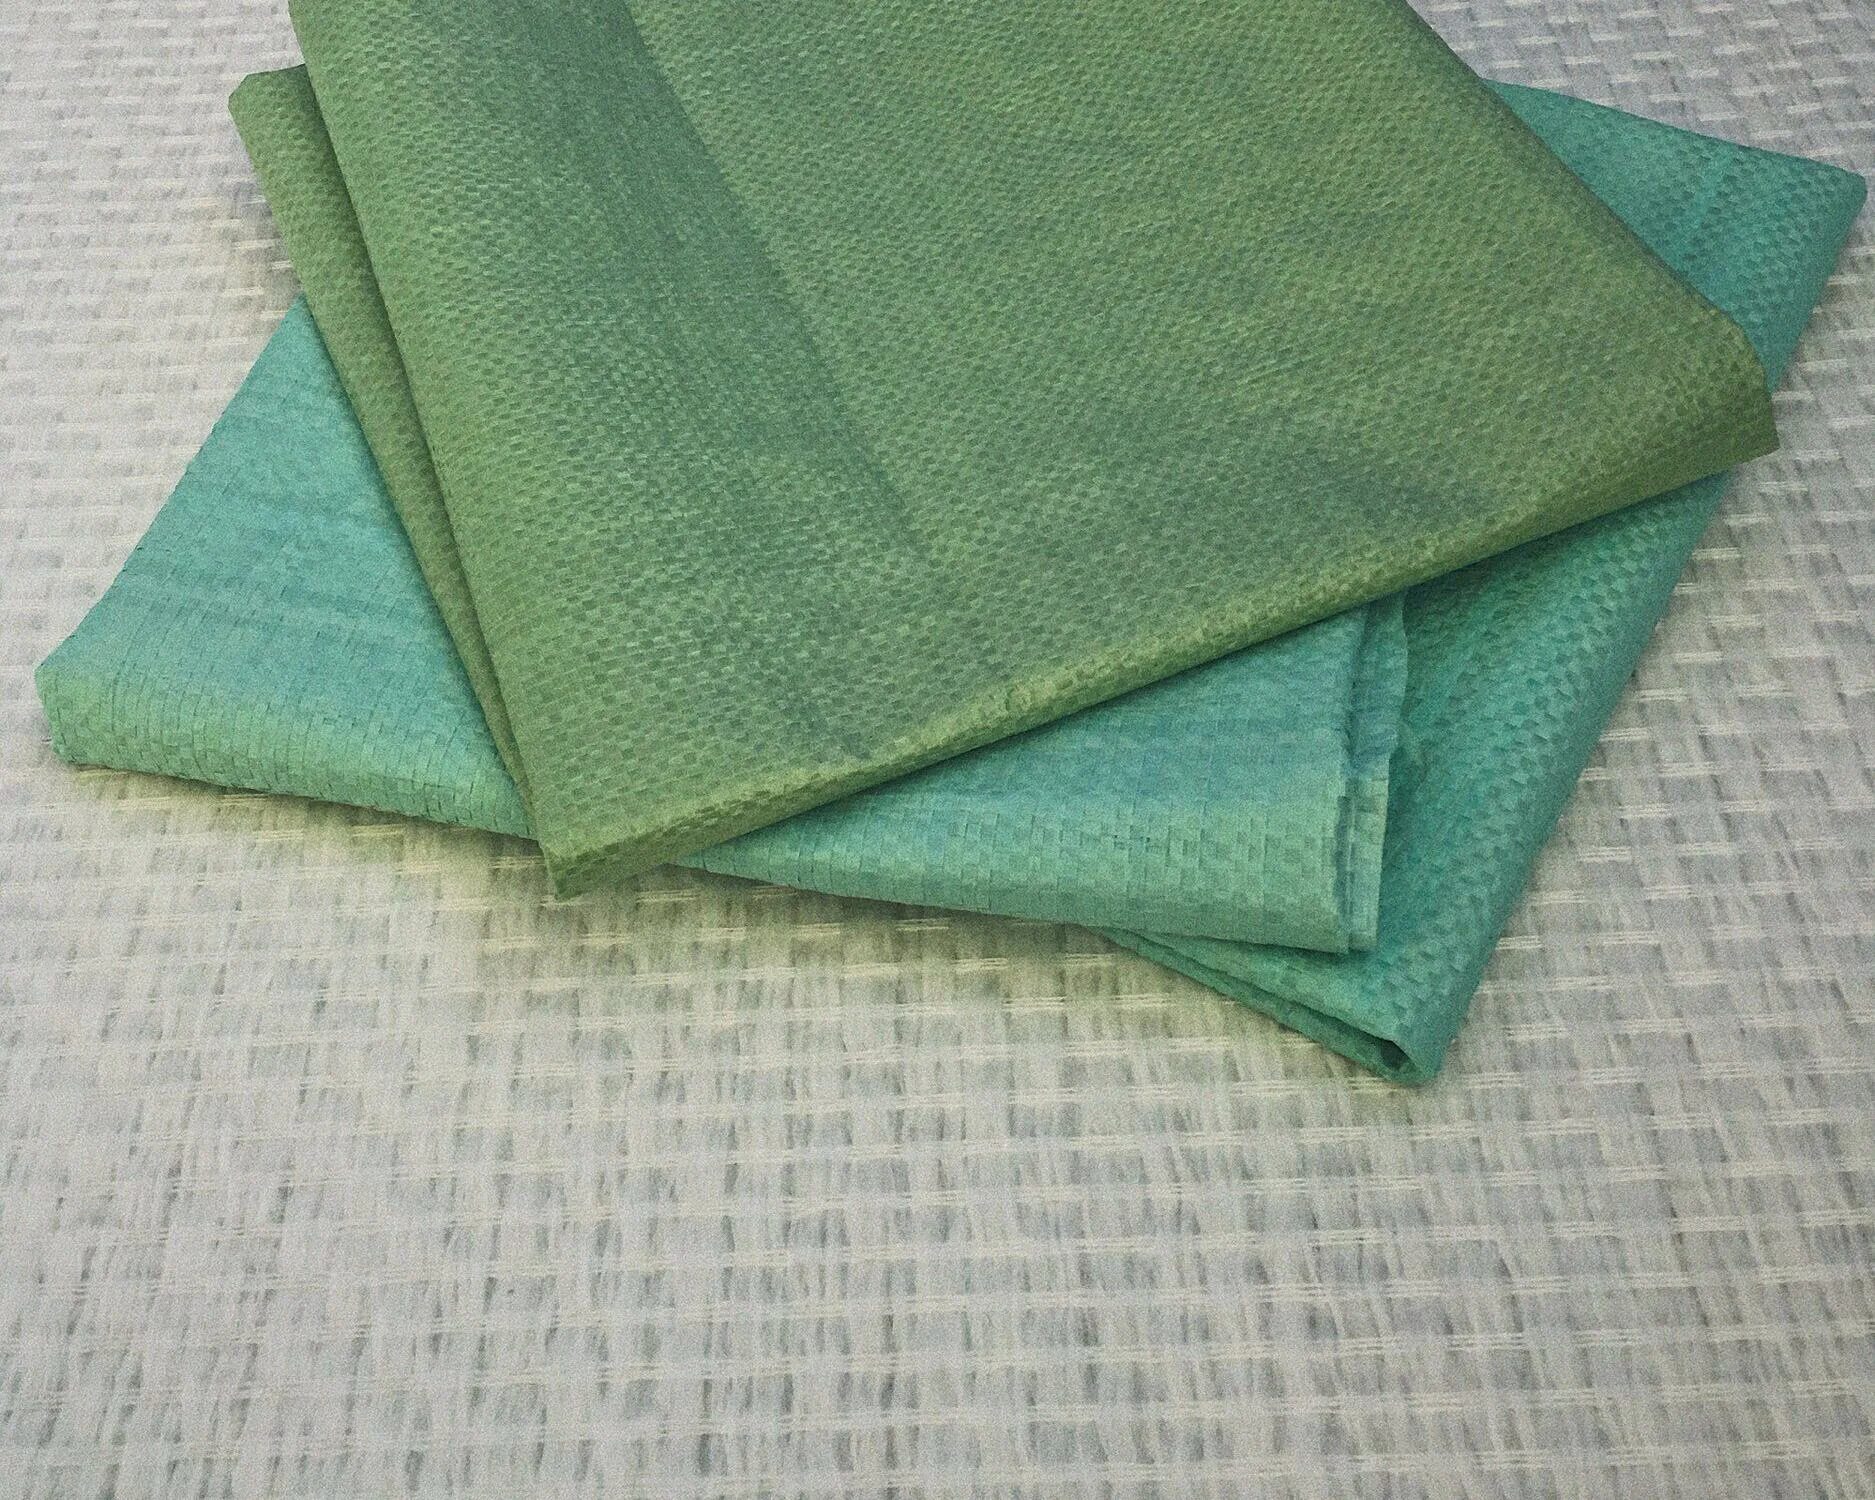 Куплю мешки зеленые. Мешок зеленый. Мешки строительные зеленые. Полипропиленовые мешки зеленого цвета. Мешок для картошки зеленый.